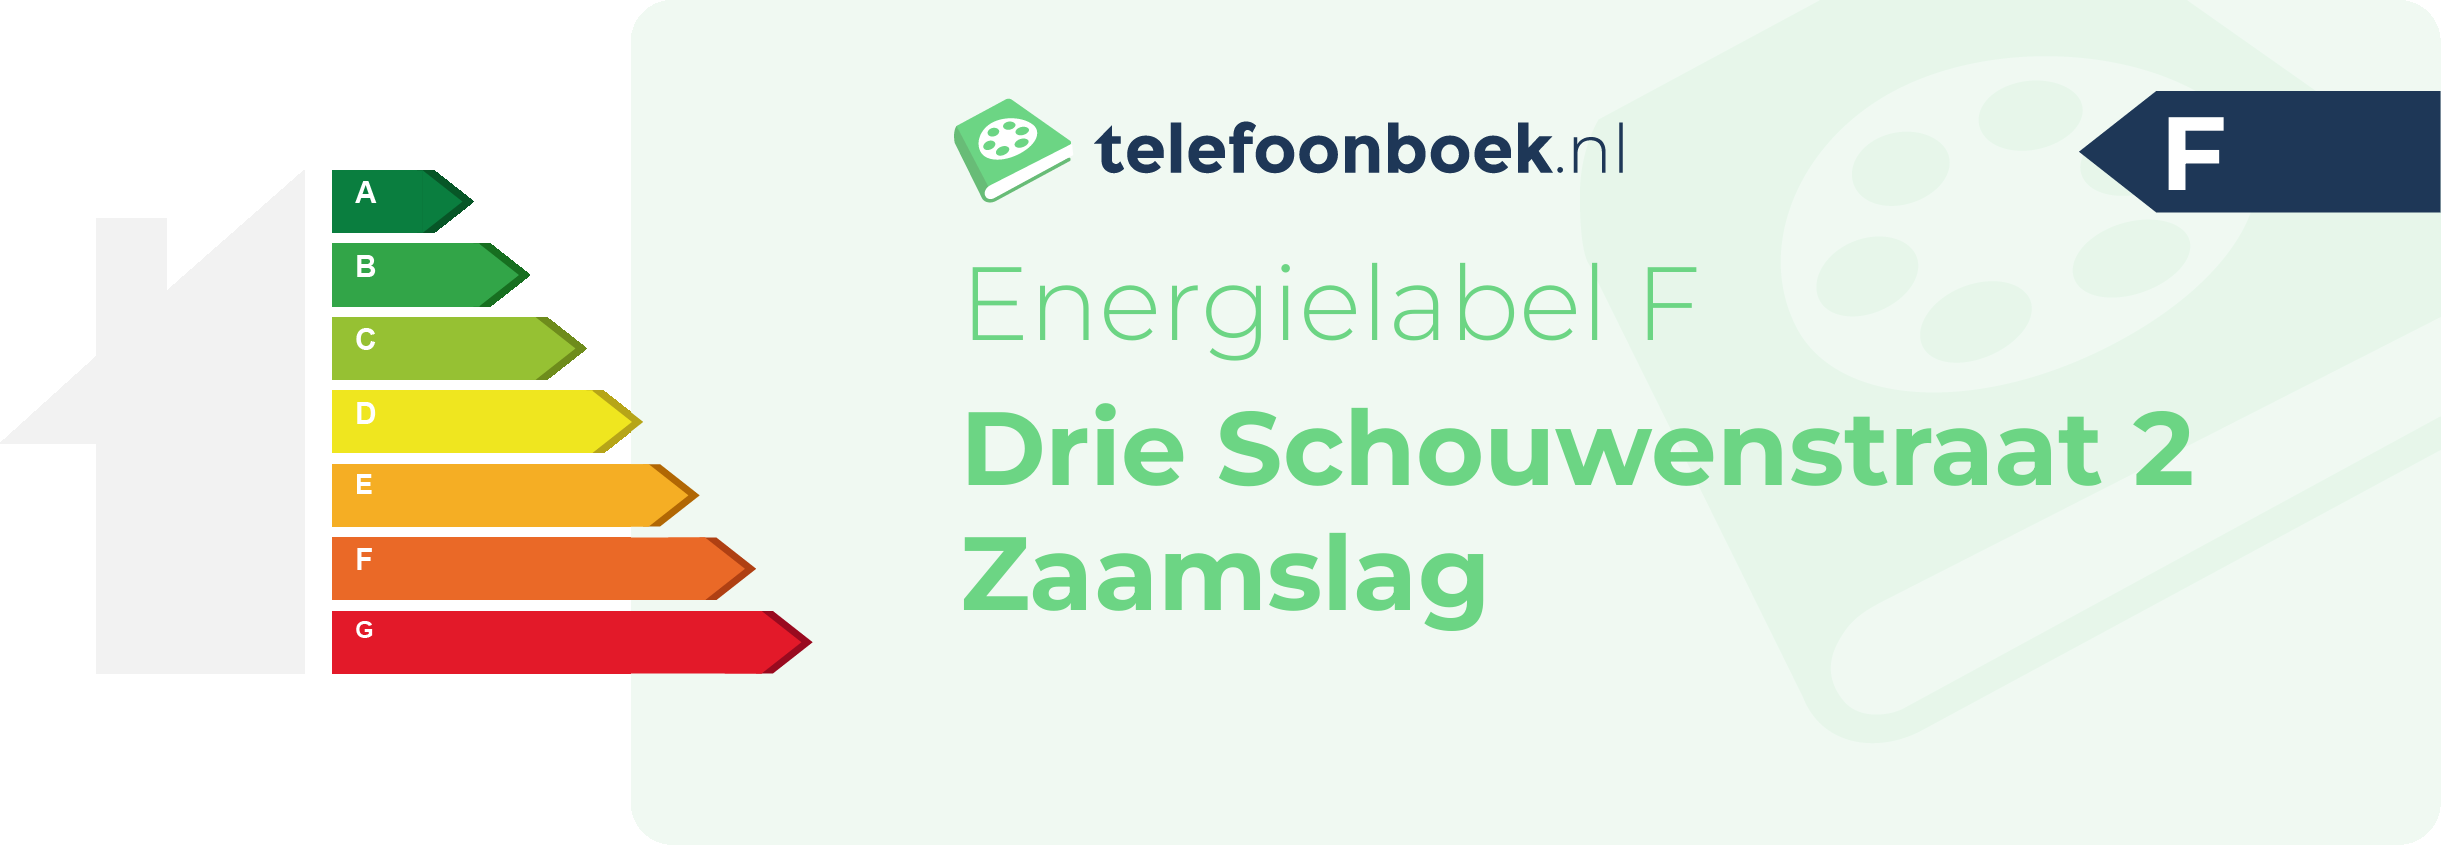 Energielabel Drie Schouwenstraat 2 Zaamslag